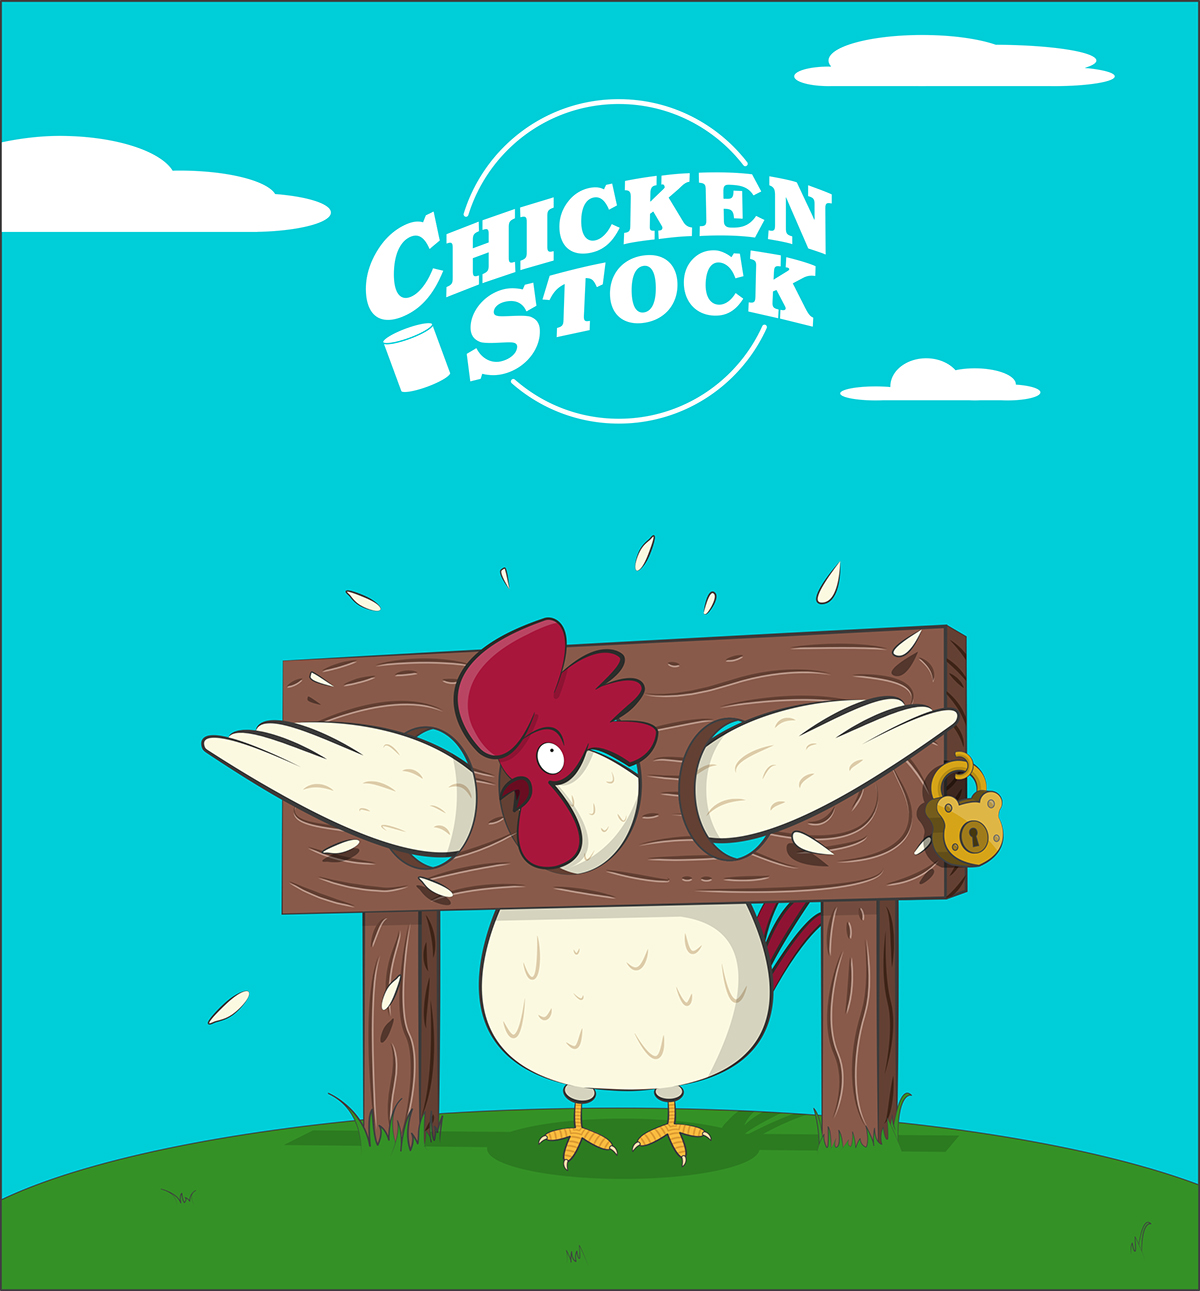 Illustrator adobe Chicken Stock chicken vector flat